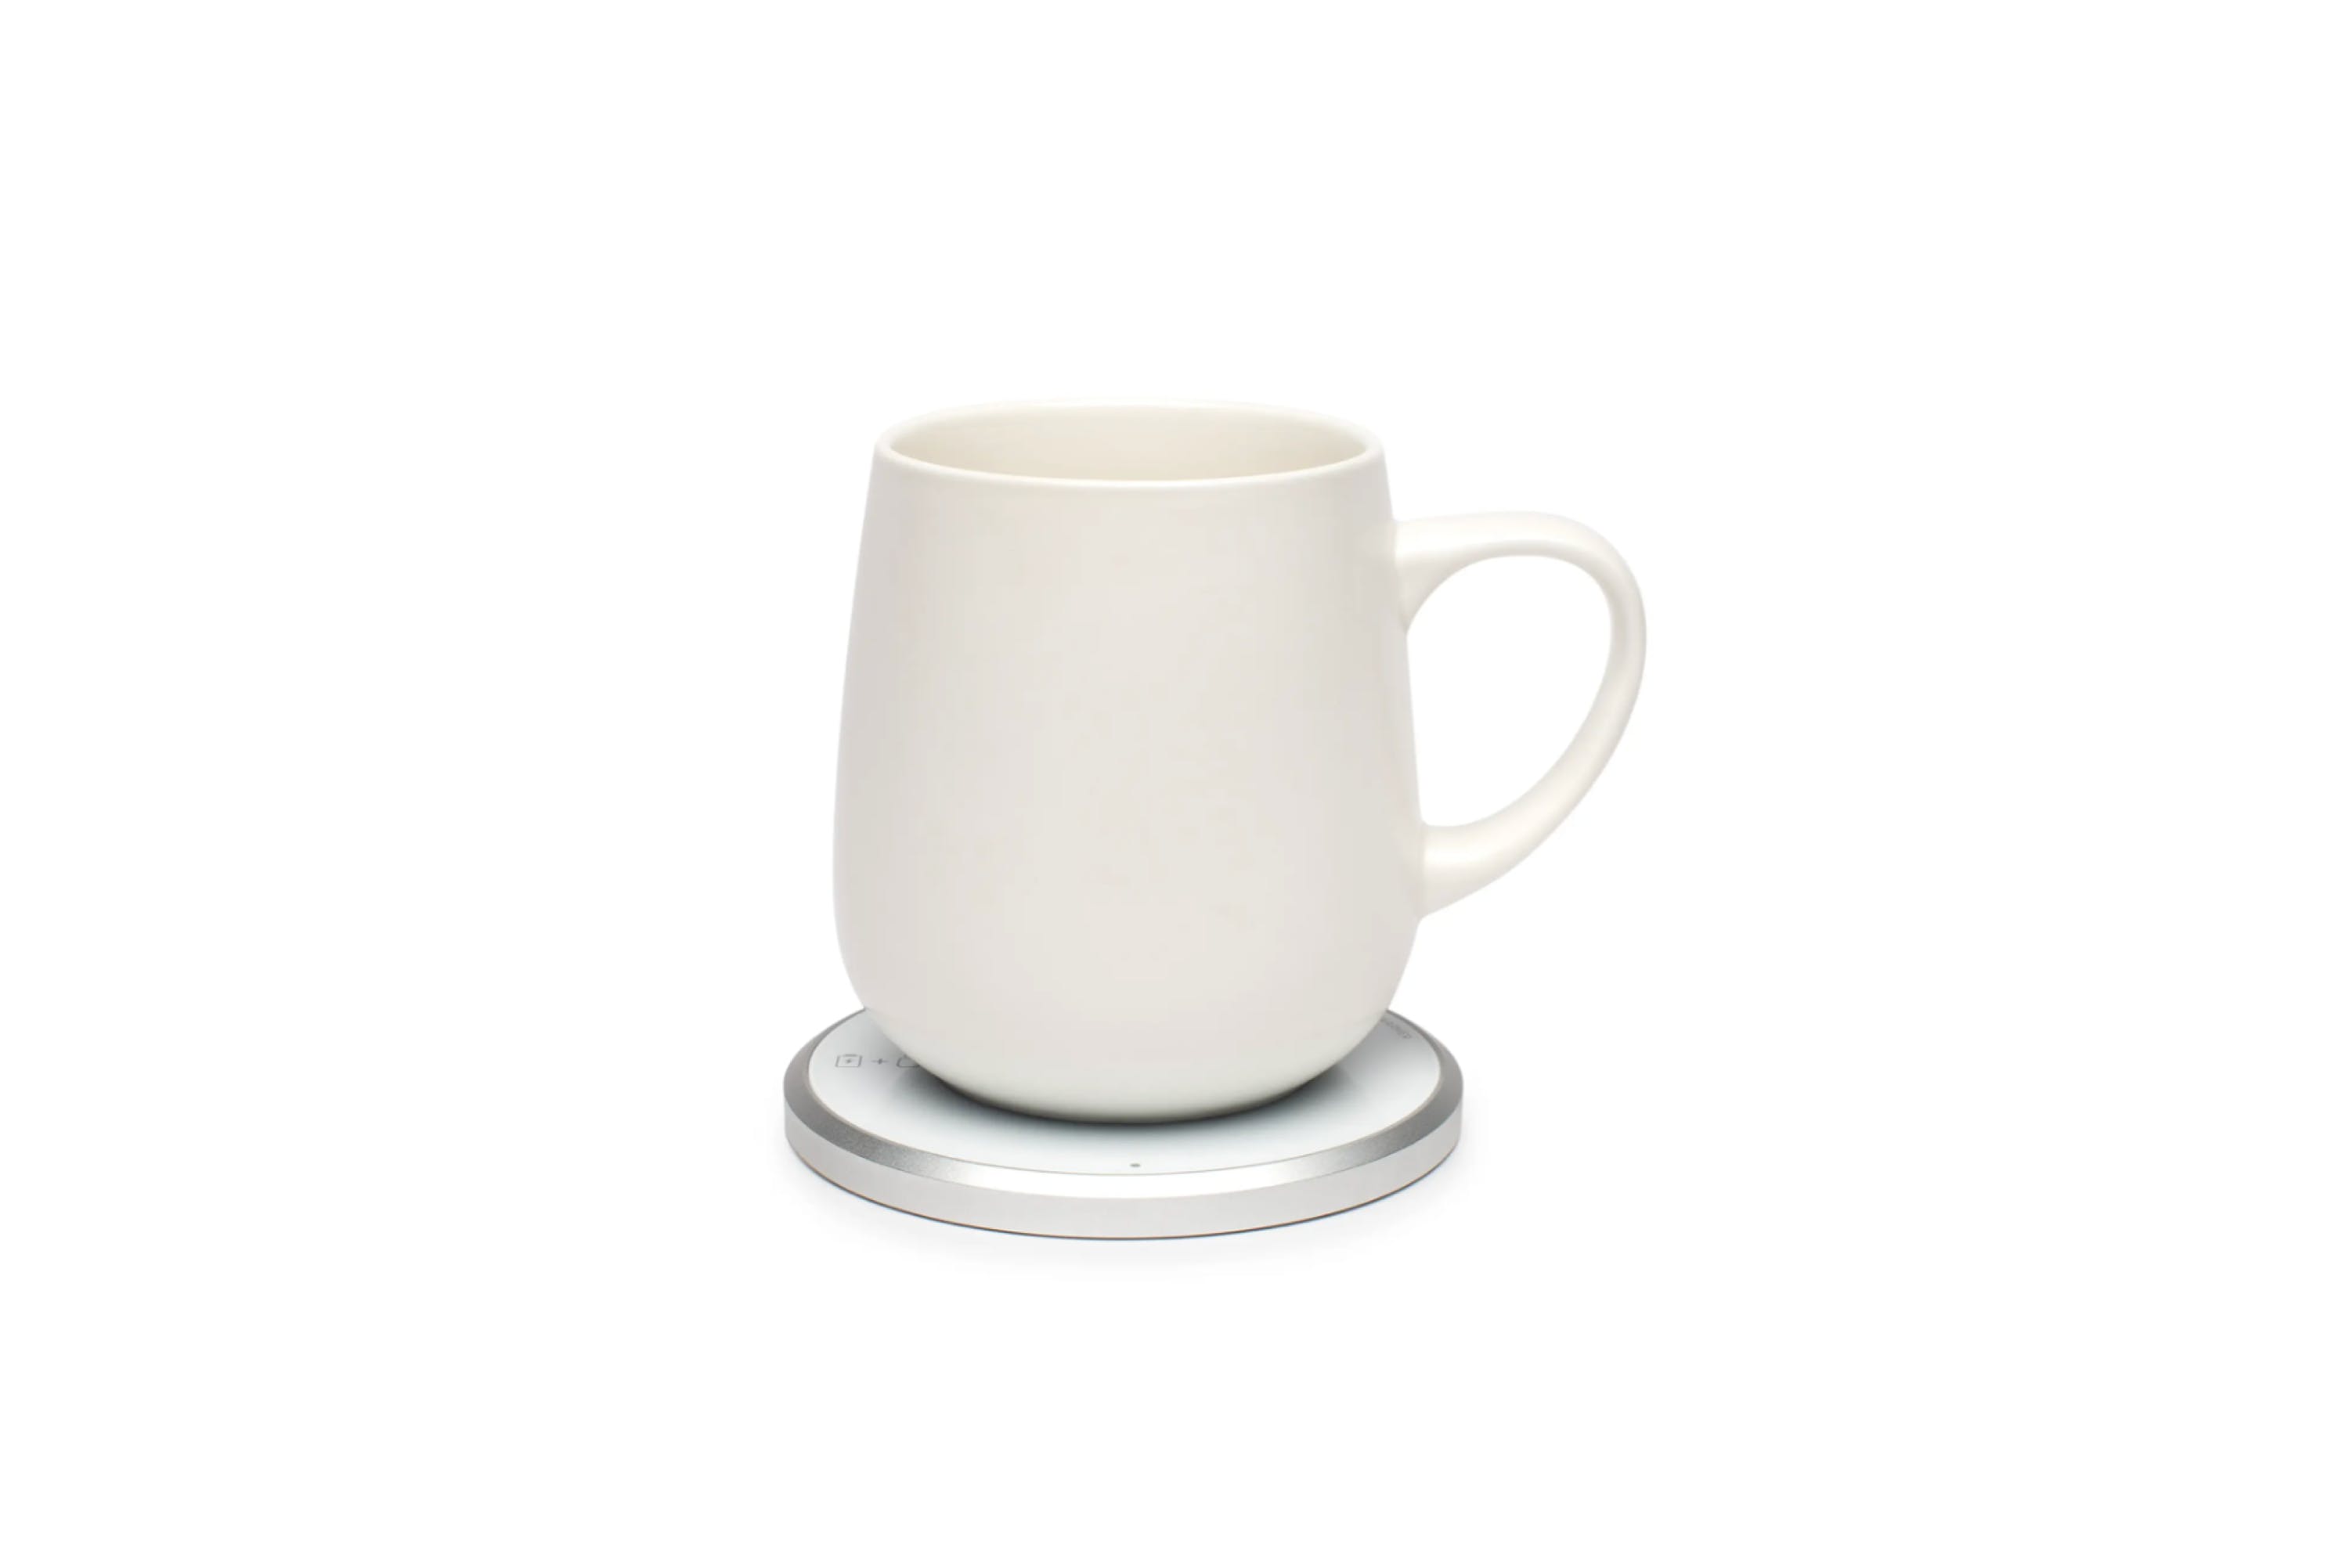 OHOM Self Heating Ceramic Mug on Food52 on Food52